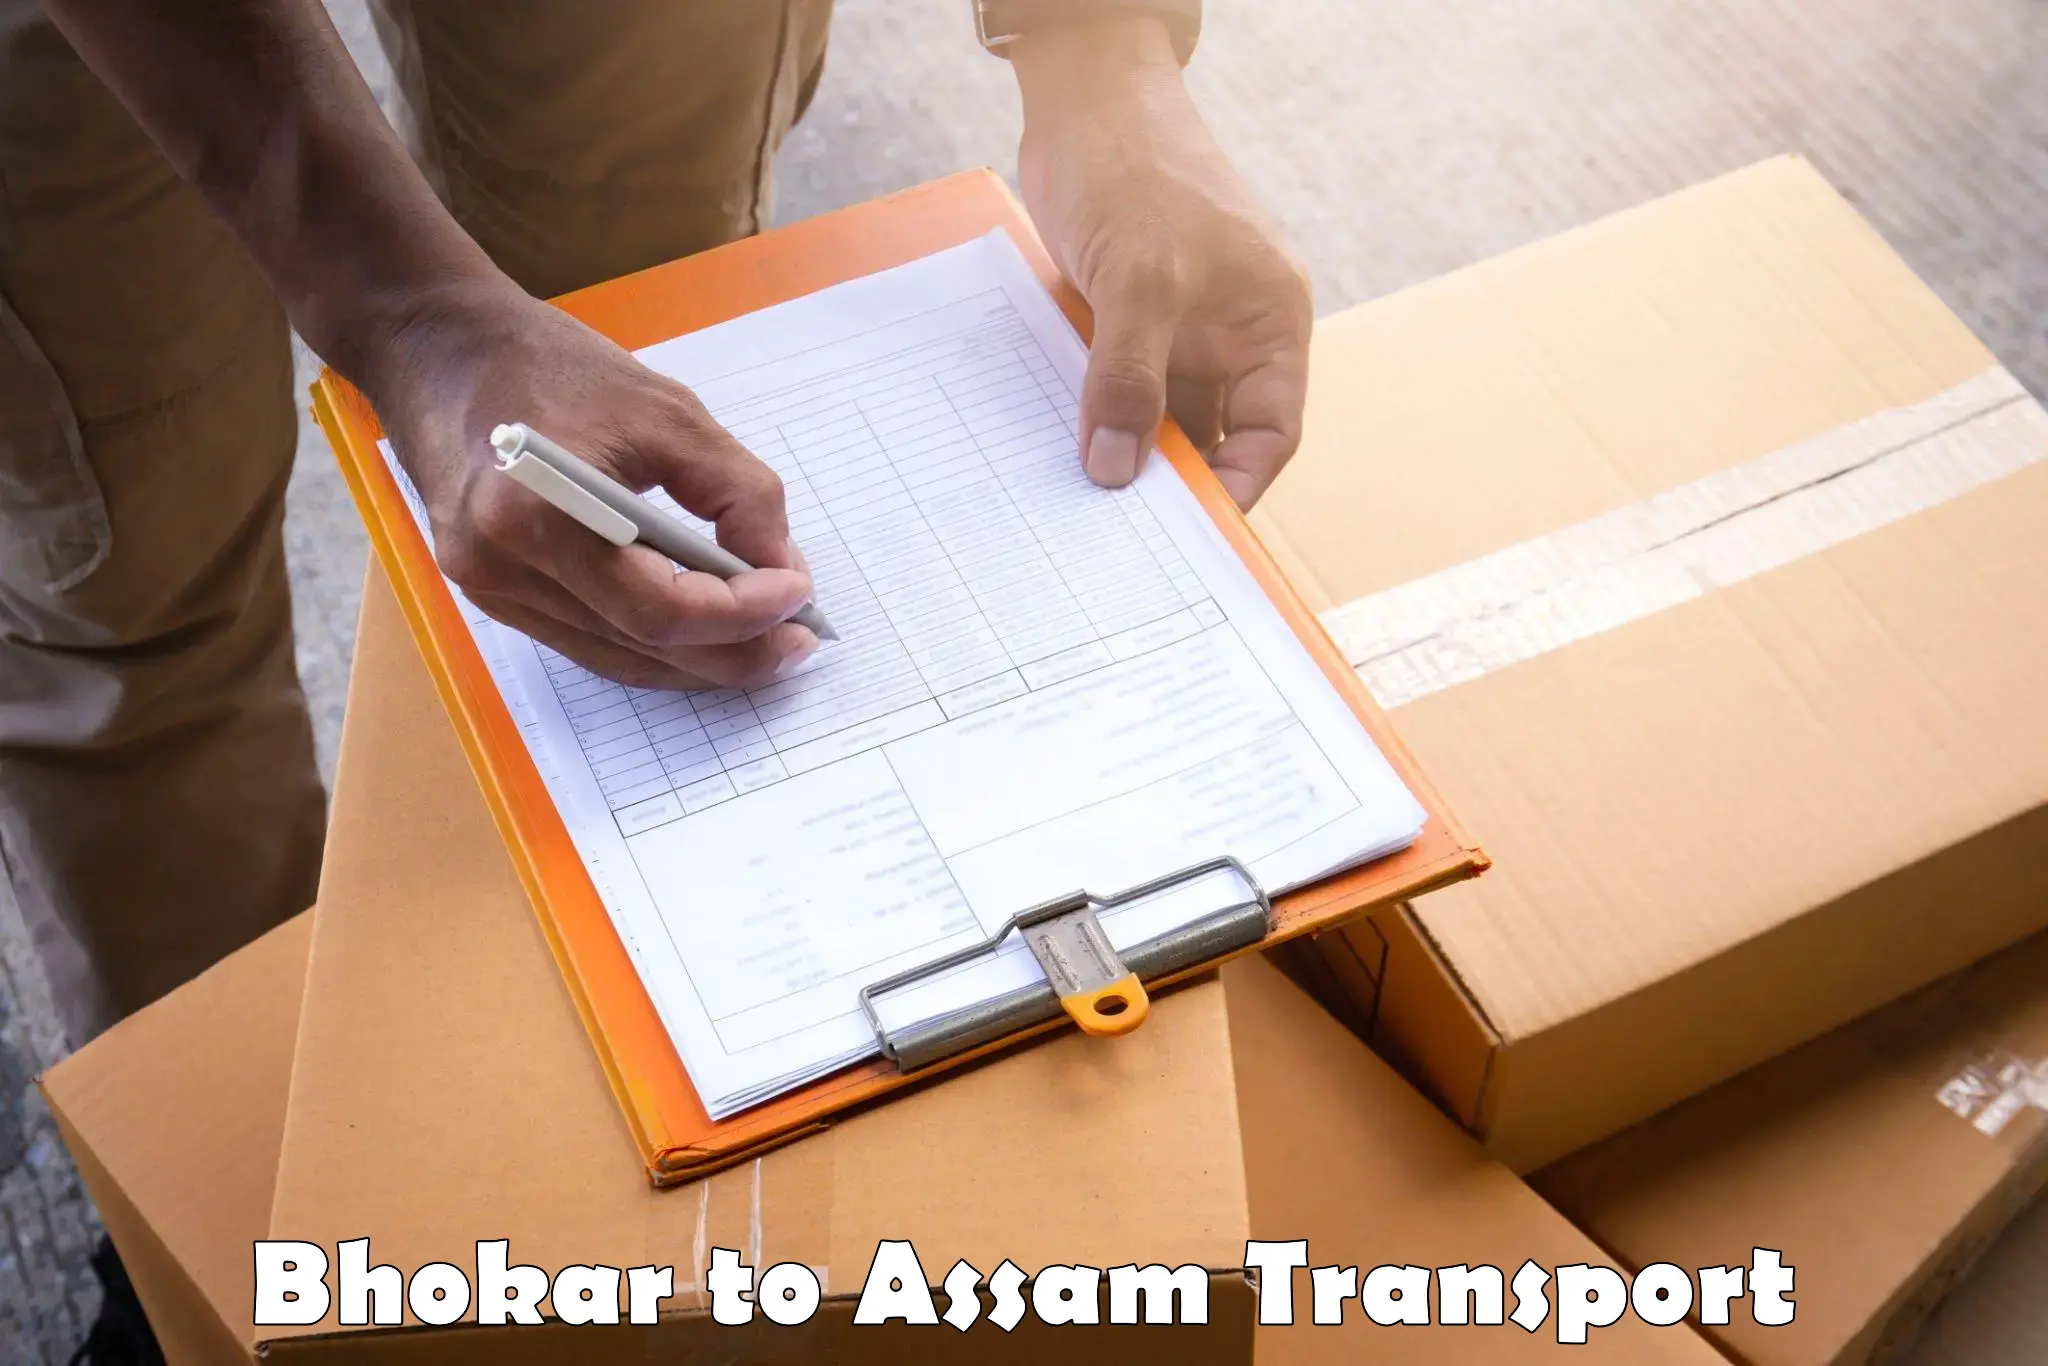 Air freight transport services Bhokar to Manikpur Bongaigaon